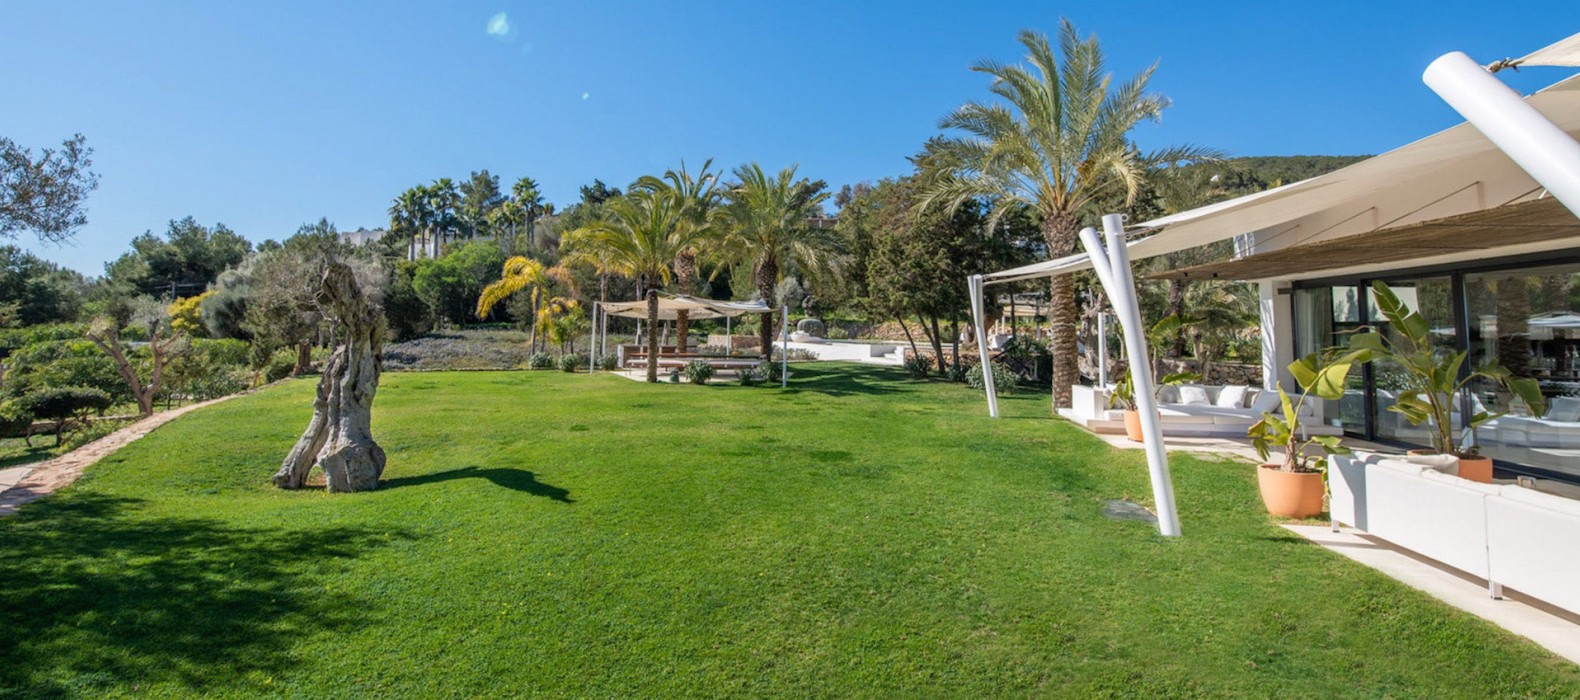 Garden of Villa Liama in Ibiza